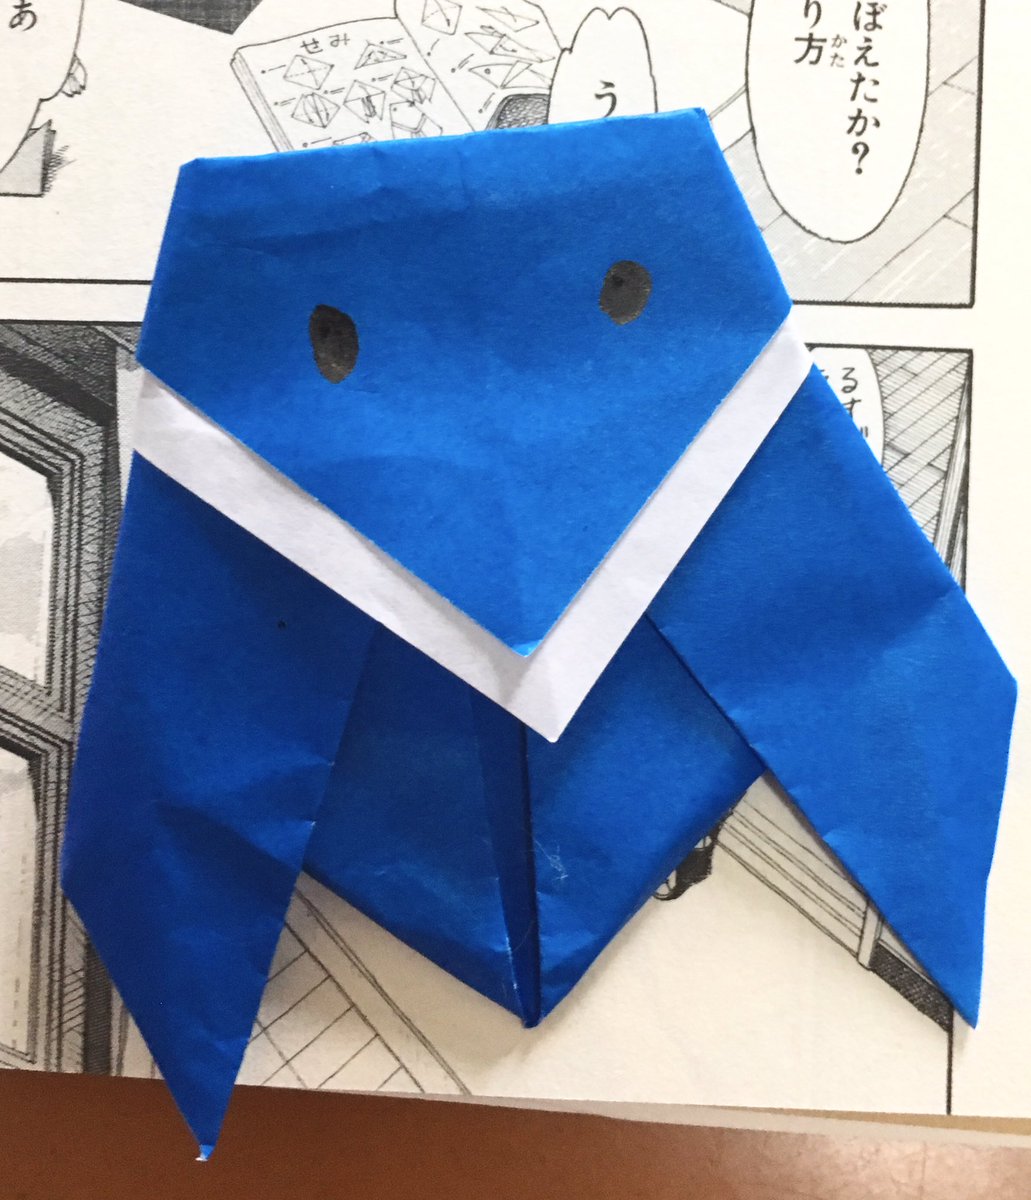 ノキ トモヨ 子が よつばと 5巻中のコマにある 折り紙の本のセミの折り方の図解をめちゃくちゃ見ながらセミを折り上げた え すごいな君 あと折り方の図解までめちゃくちゃに描き込んであるよつばとの背景もすごいな 細かい リアル可愛い背景しゅごい